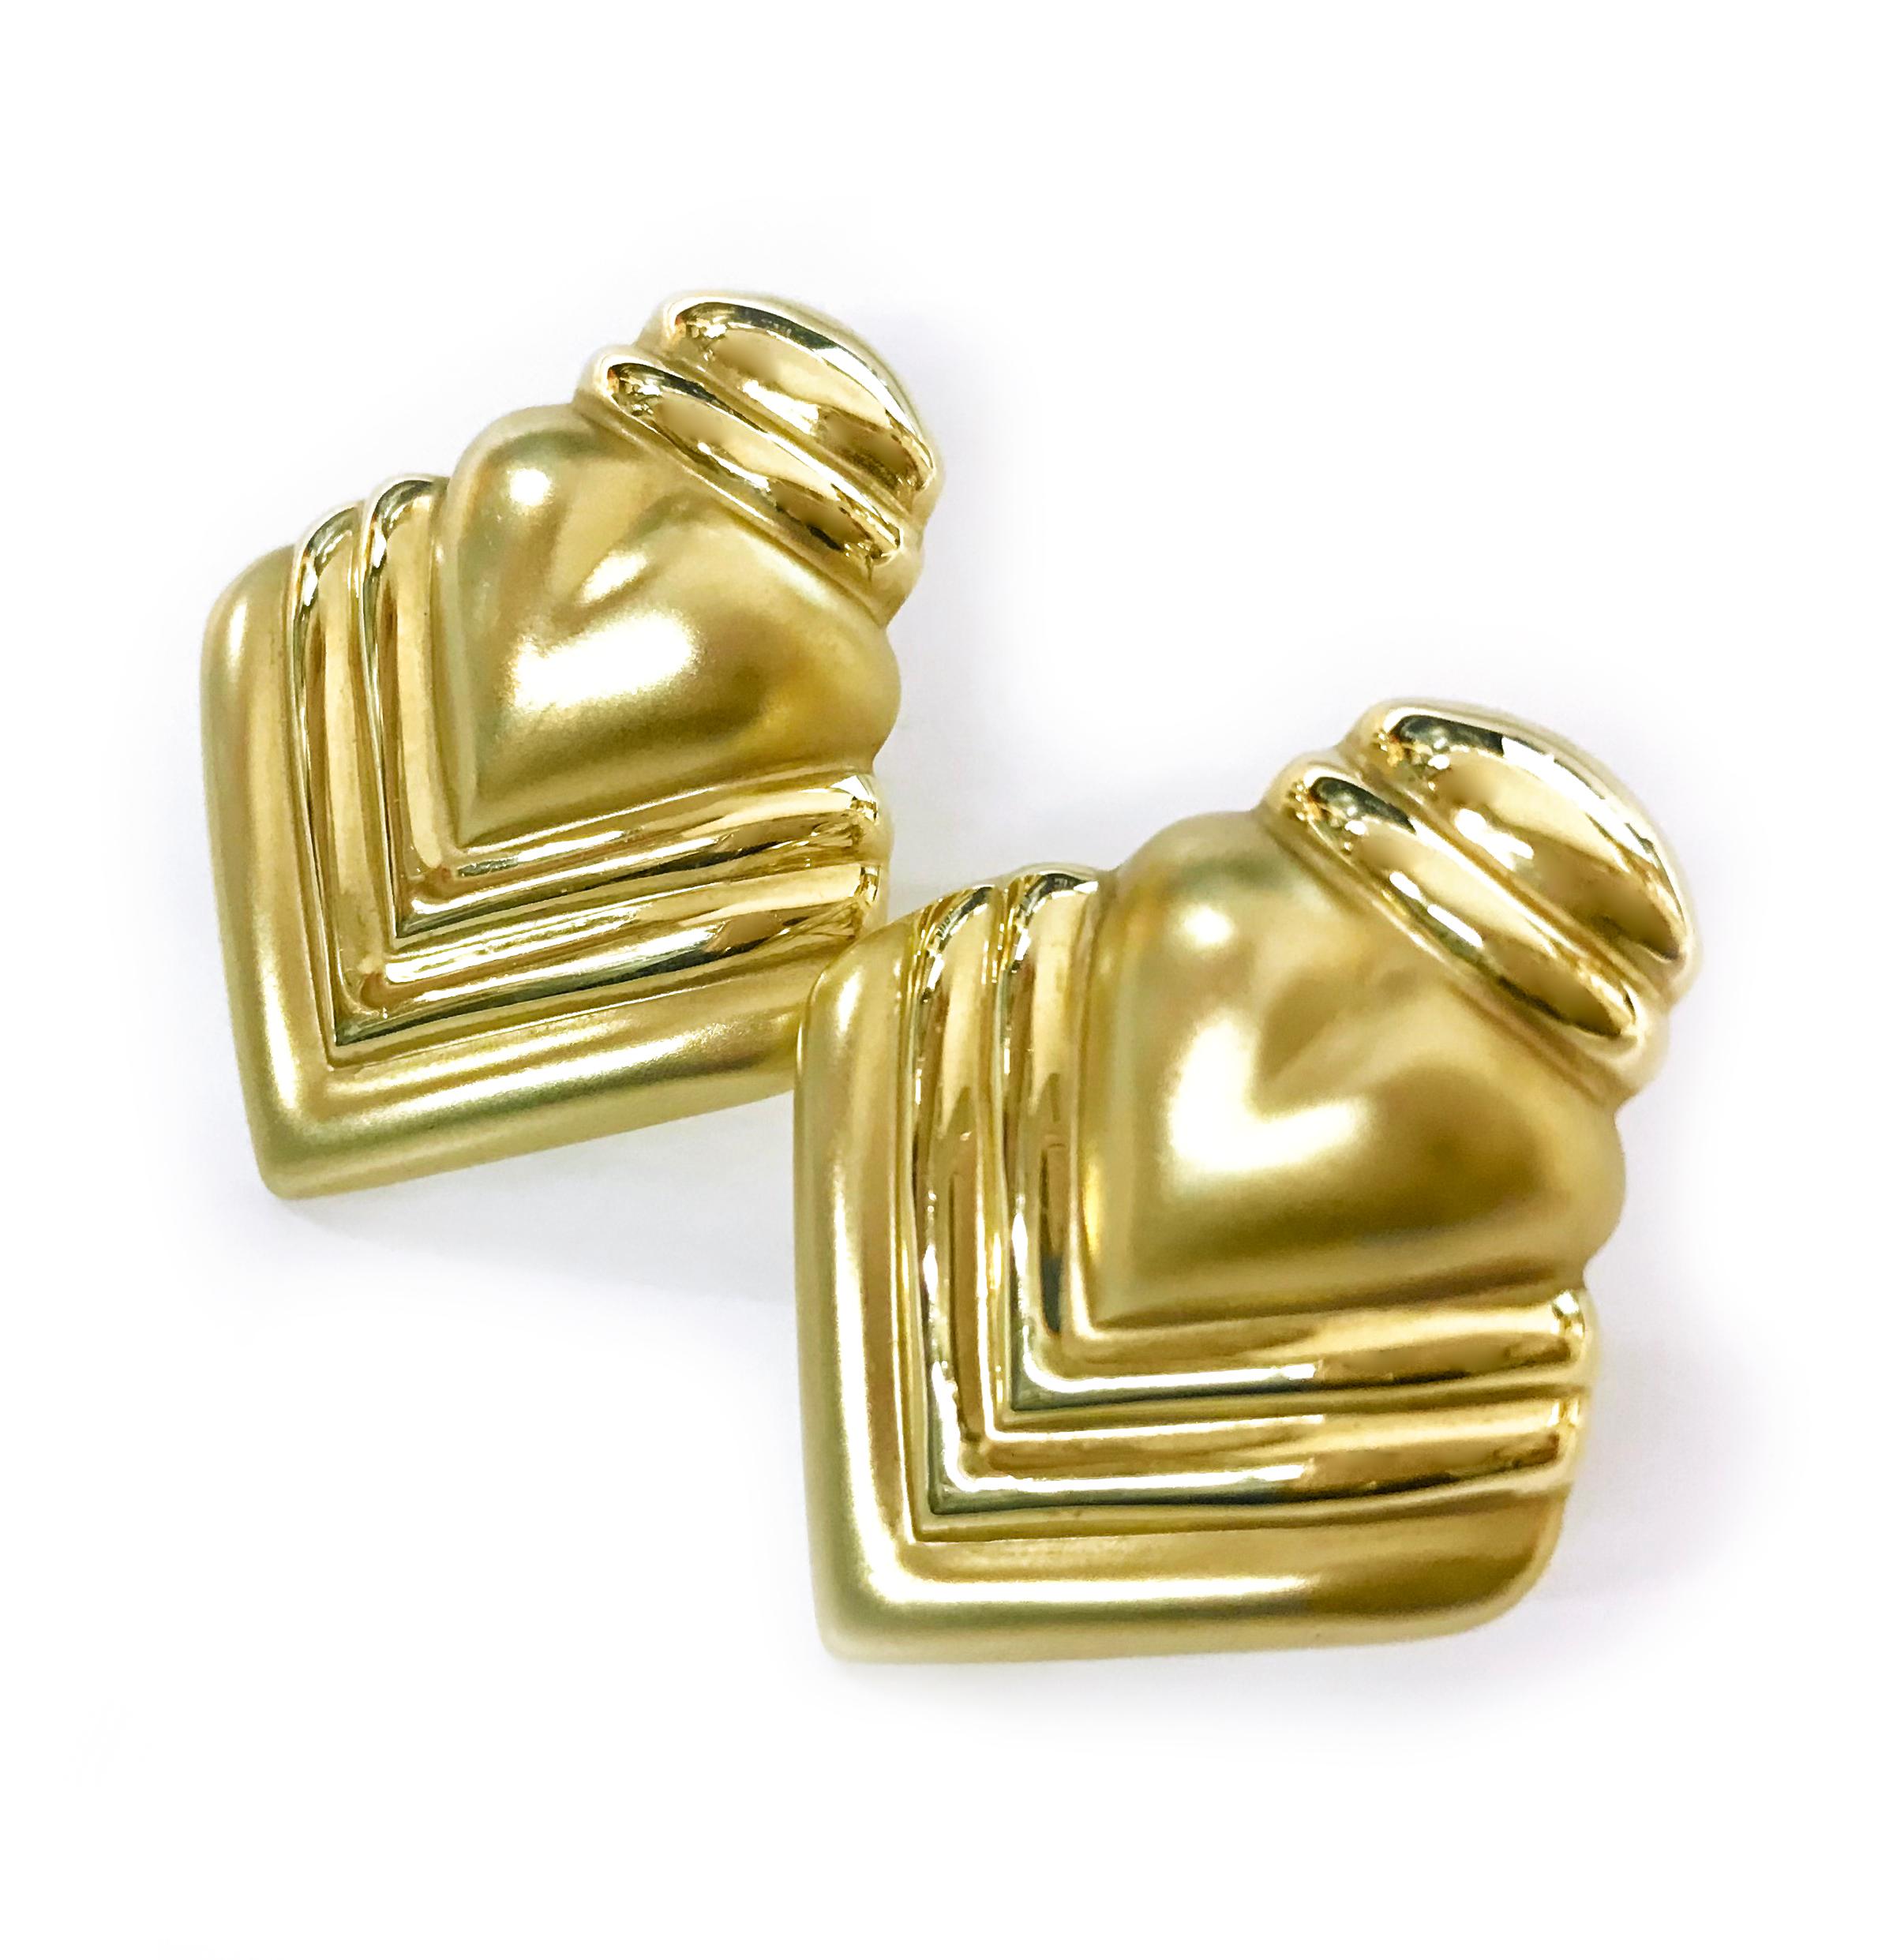 boucles d'oreilles en or 14 carats en forme de cœur. Ces boucles d'oreilles légères à clipser font une déclaration avec leur design de cœur audacieux. Les boucles d'oreilles ont un clip Omega et un poids total en or de 3,37 grammes.